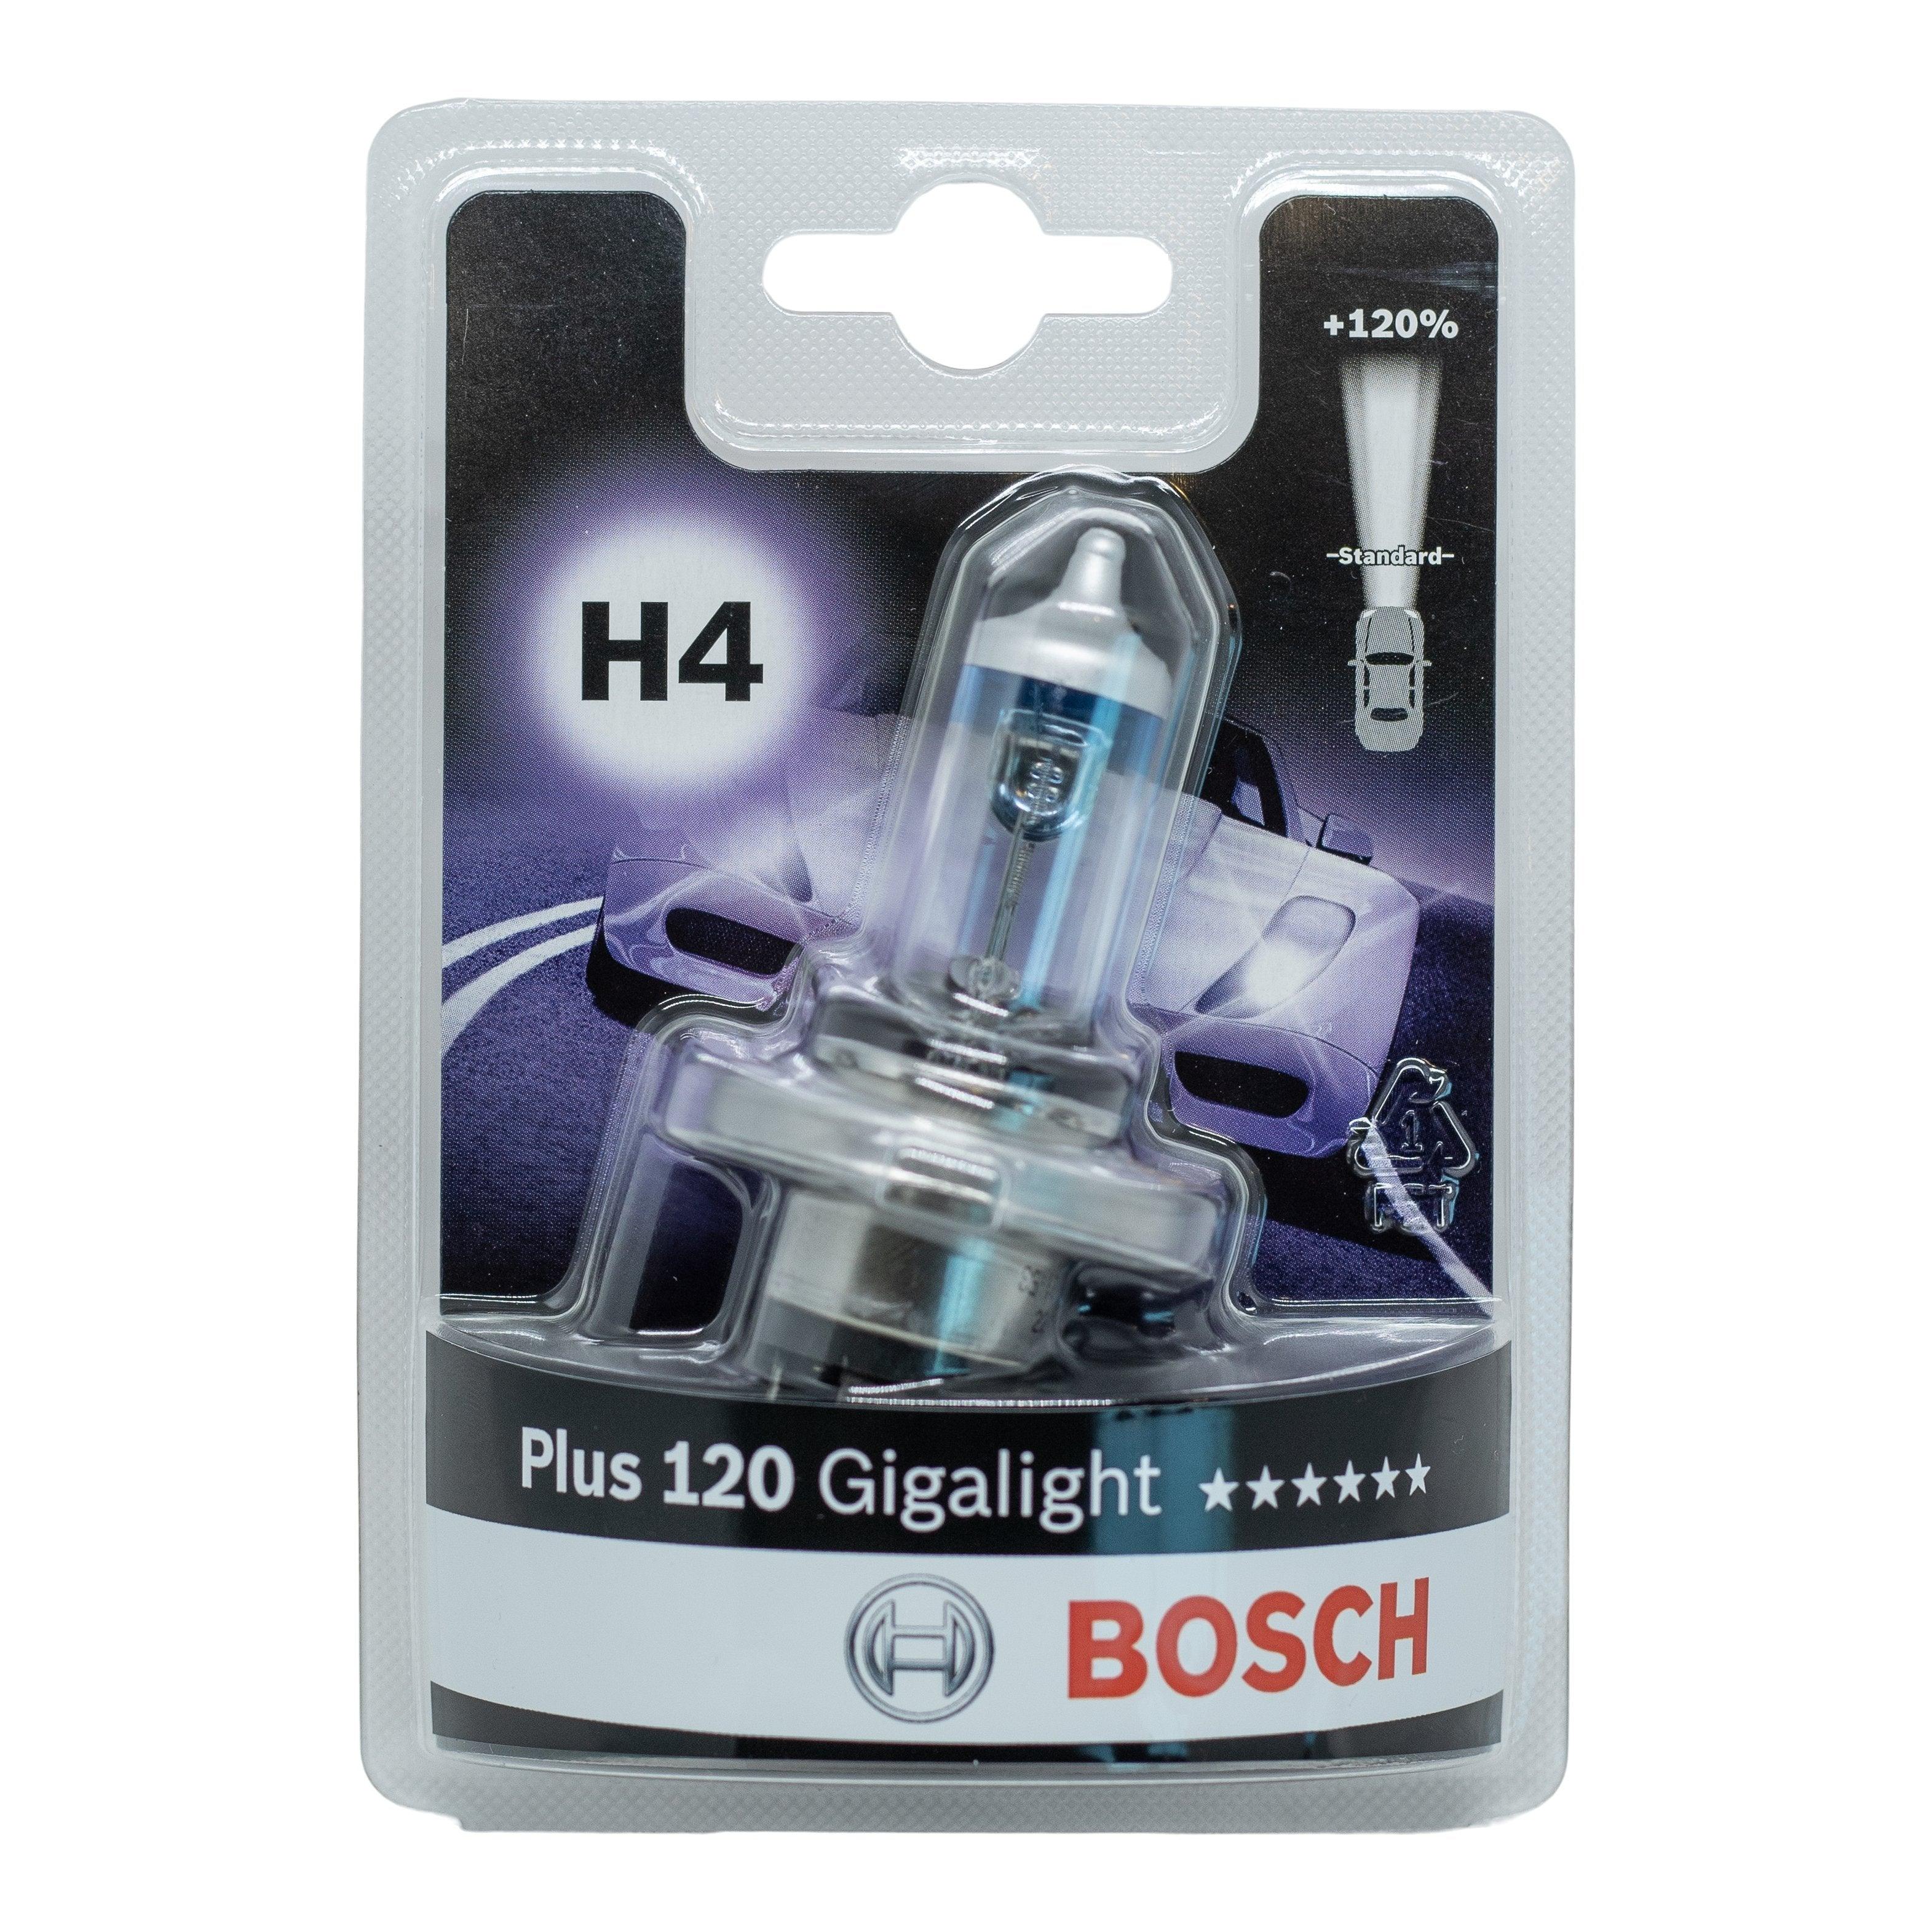 Se Bosch Giga Light 120 H4 hos XpertCleaning.dk